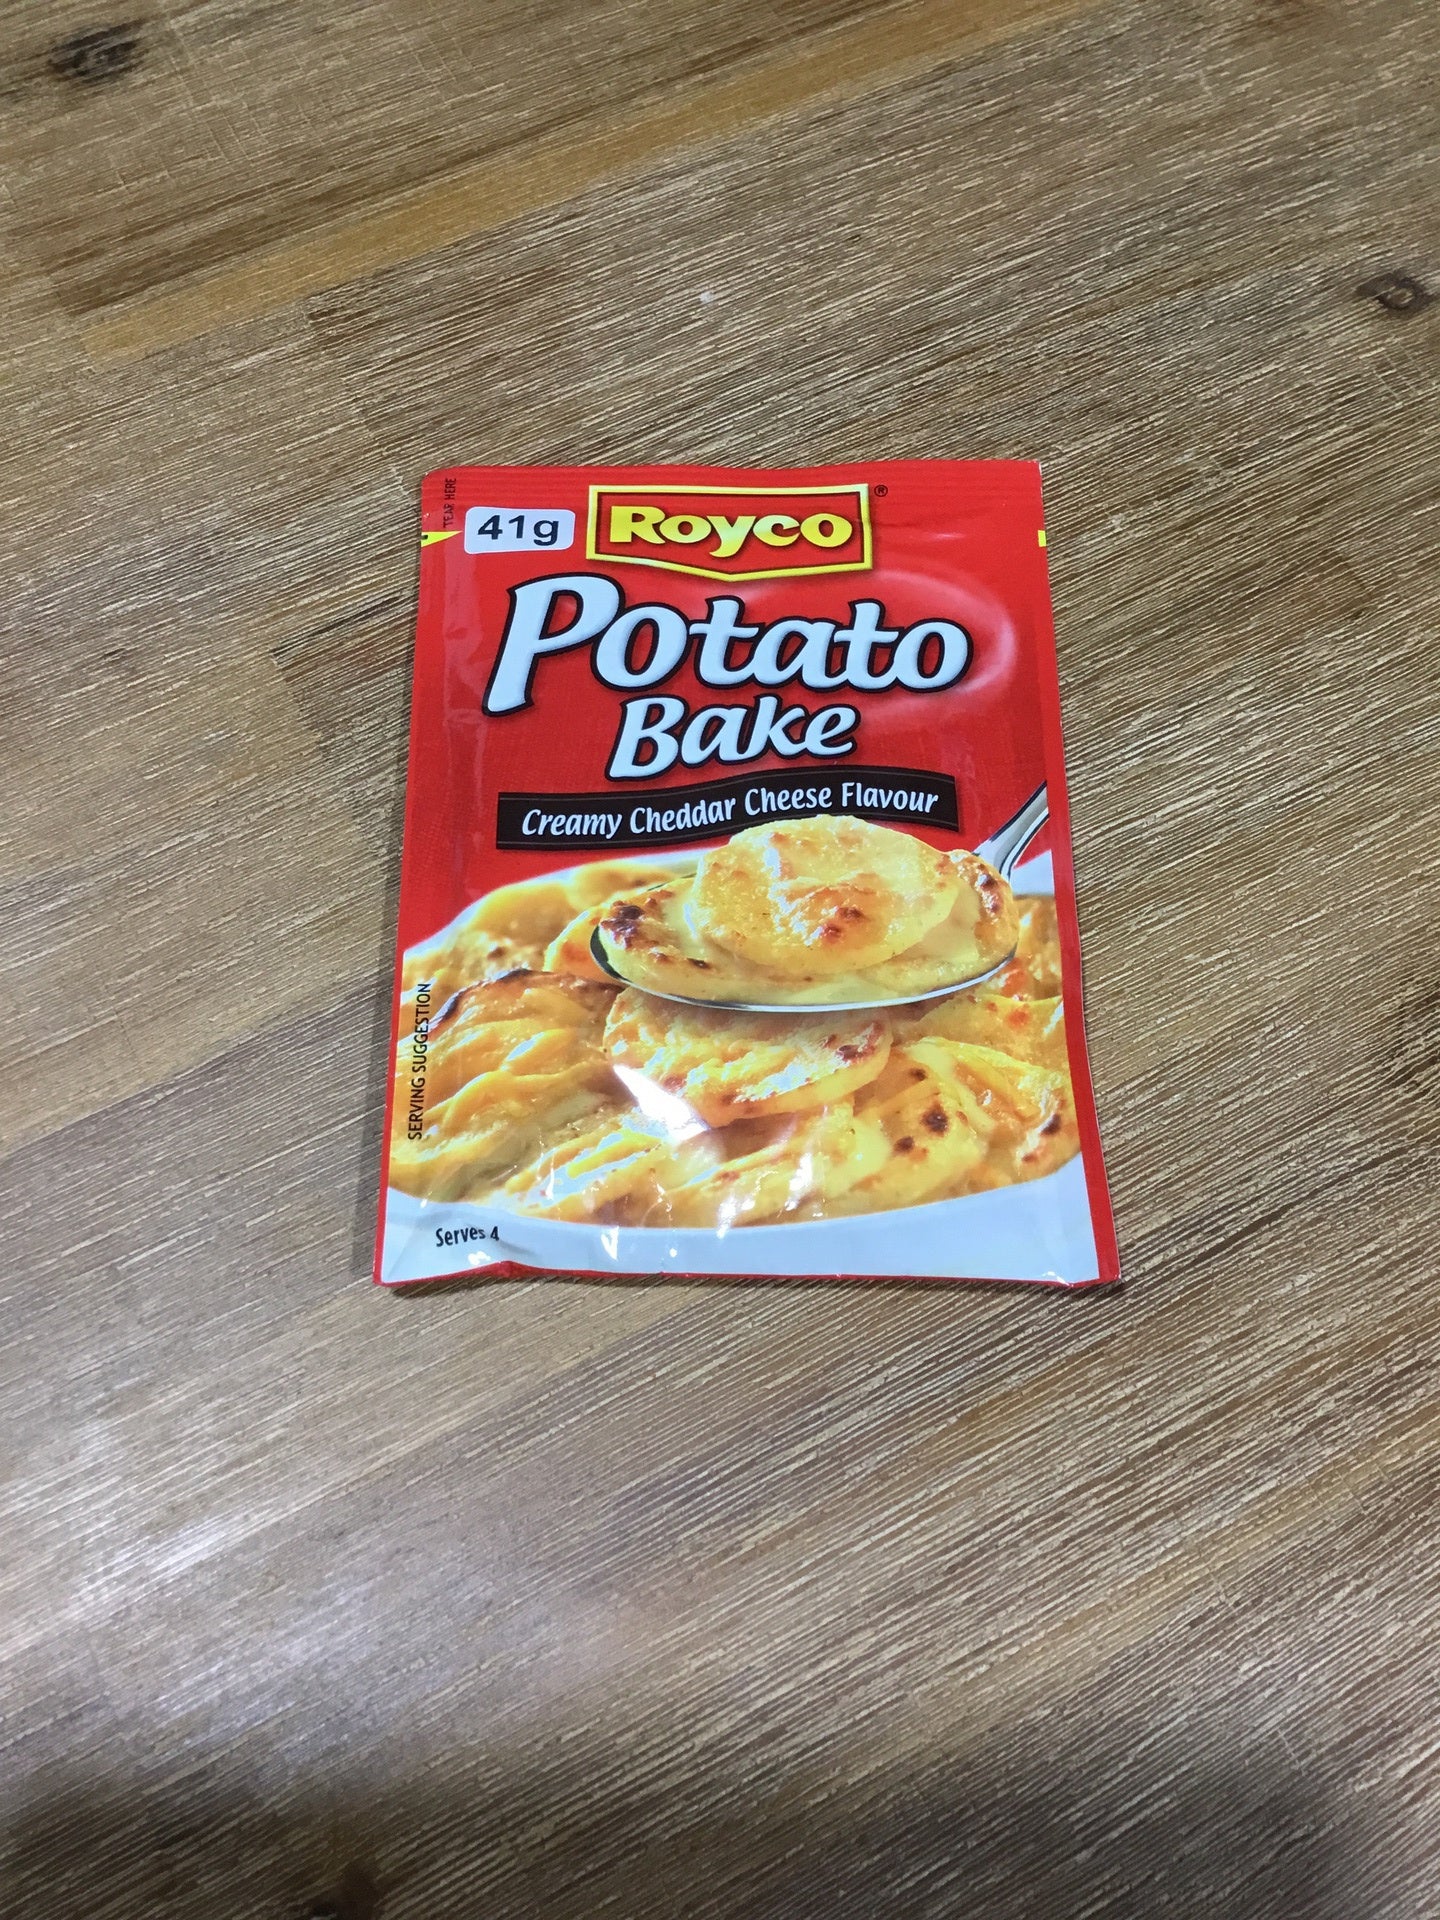 Royco Potato Bake - Creamy Cheddar